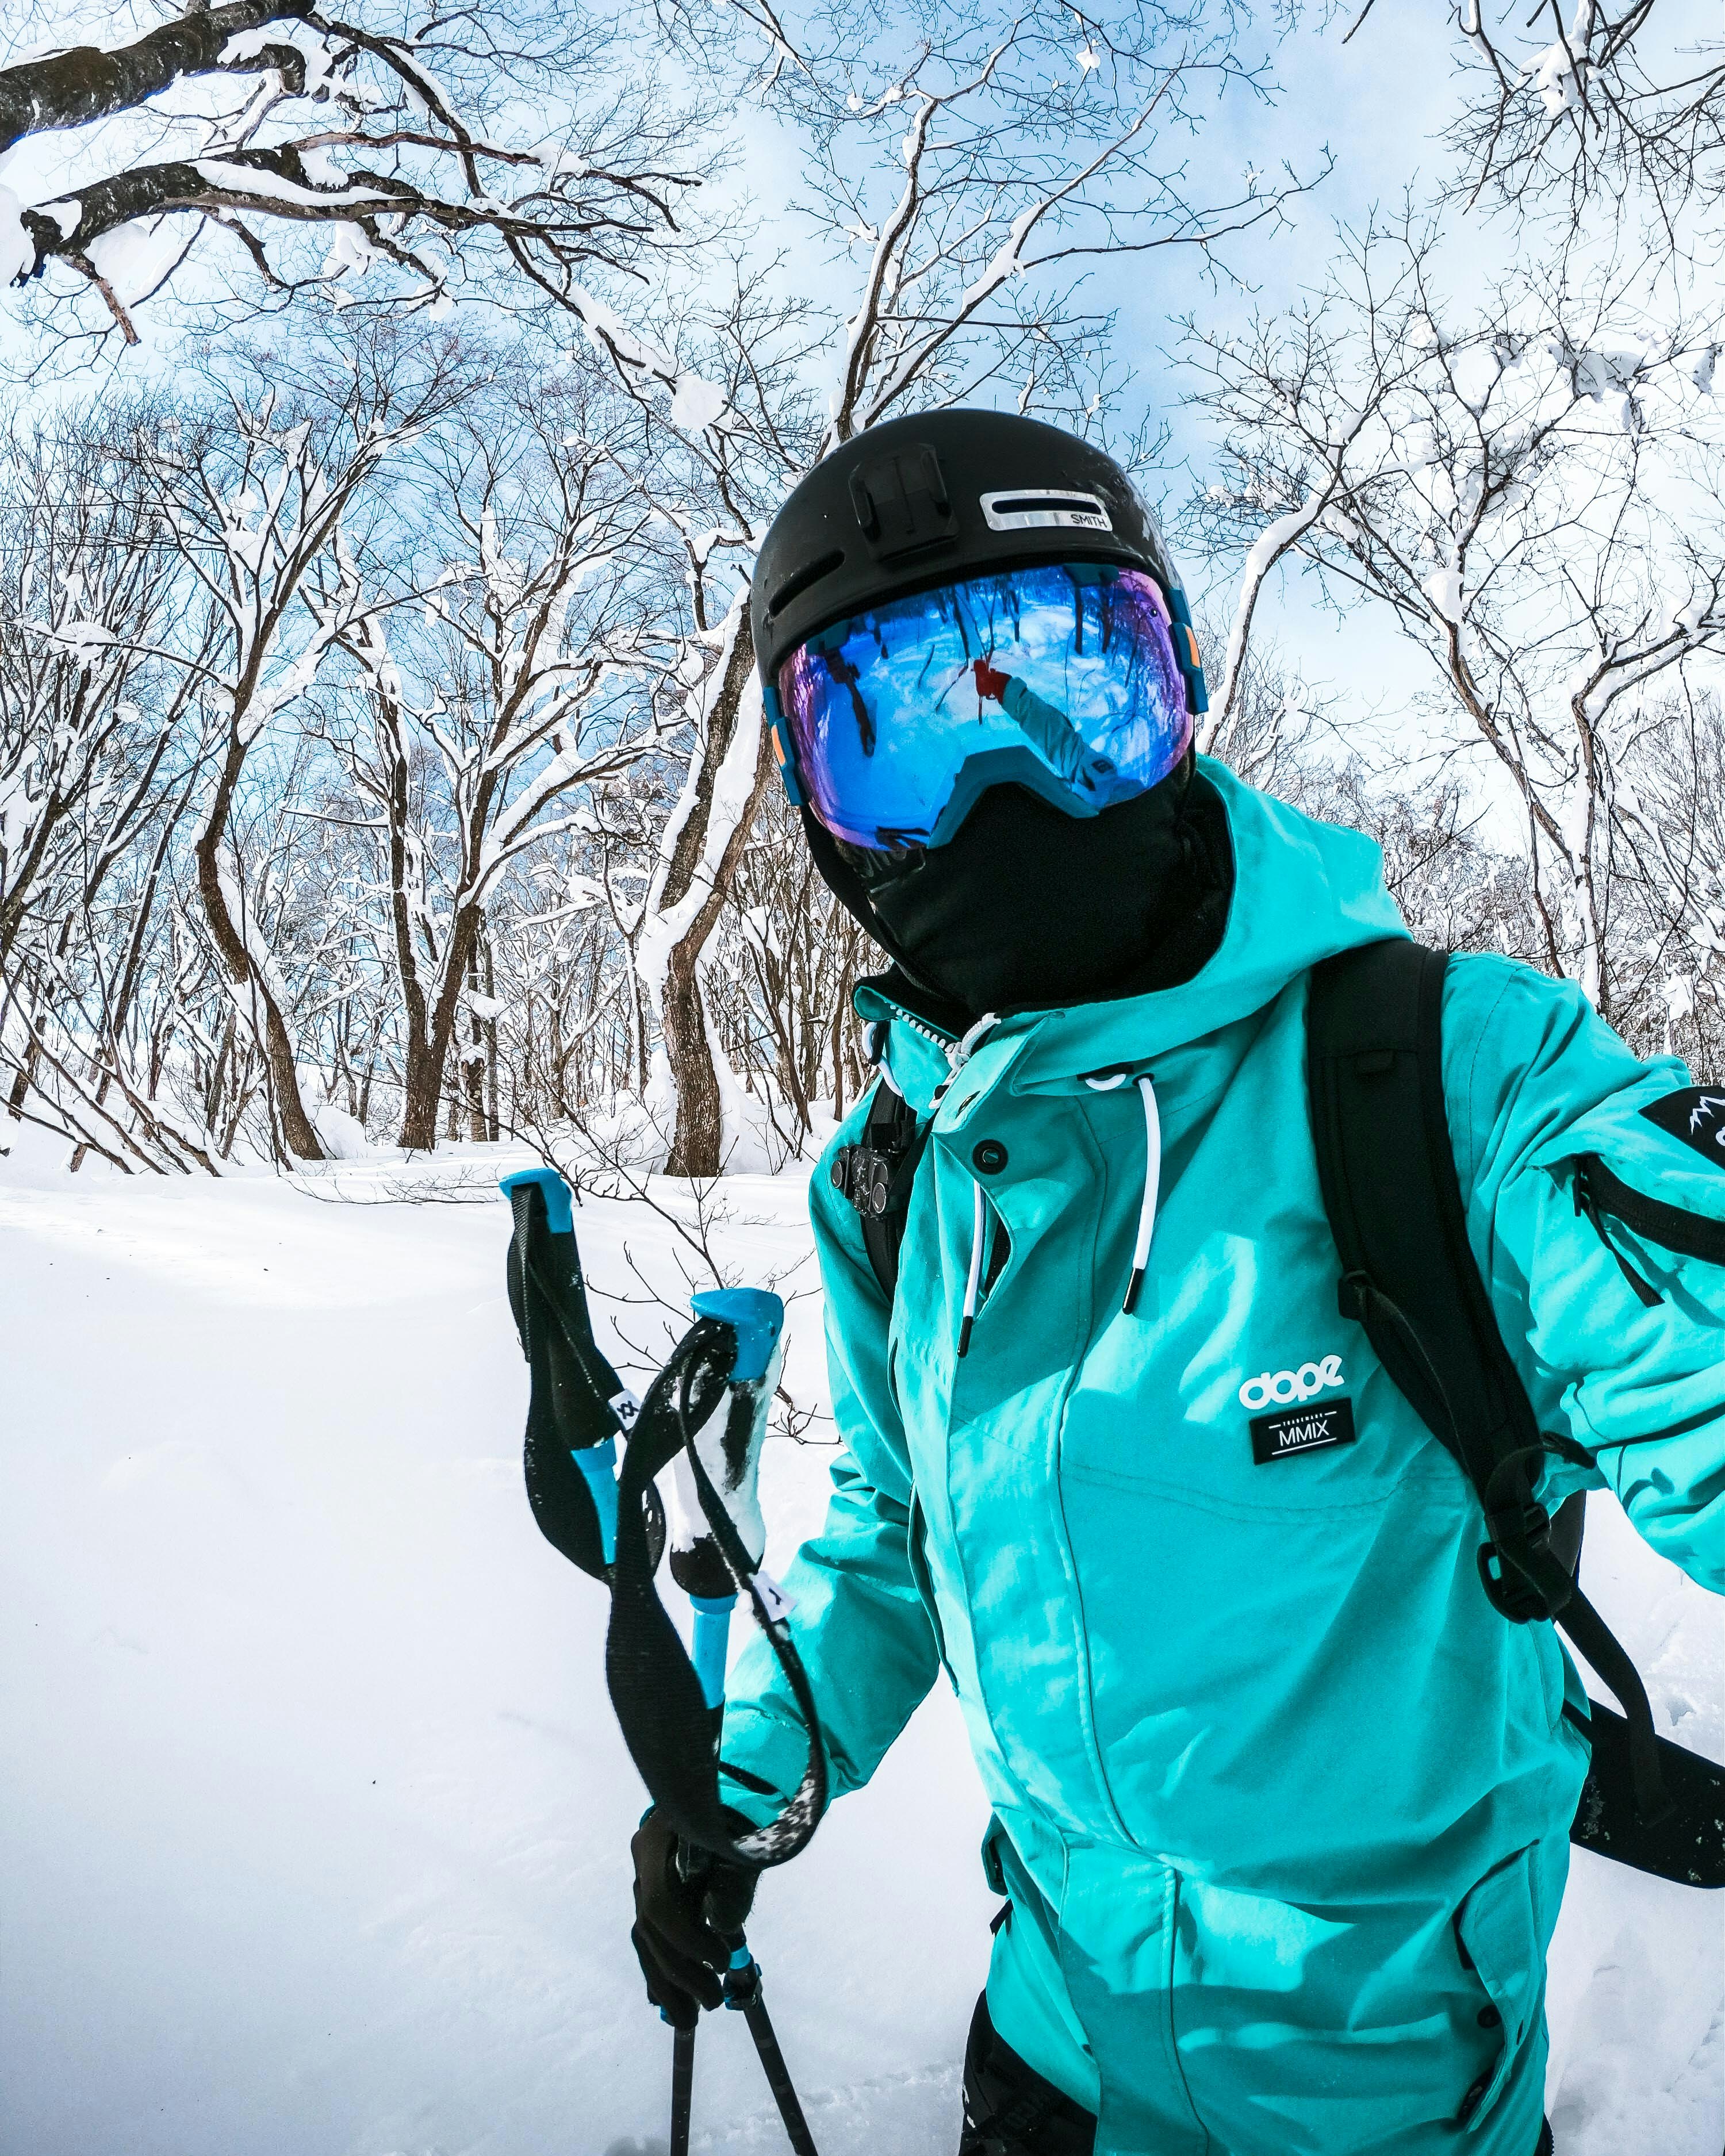 skiing in japan